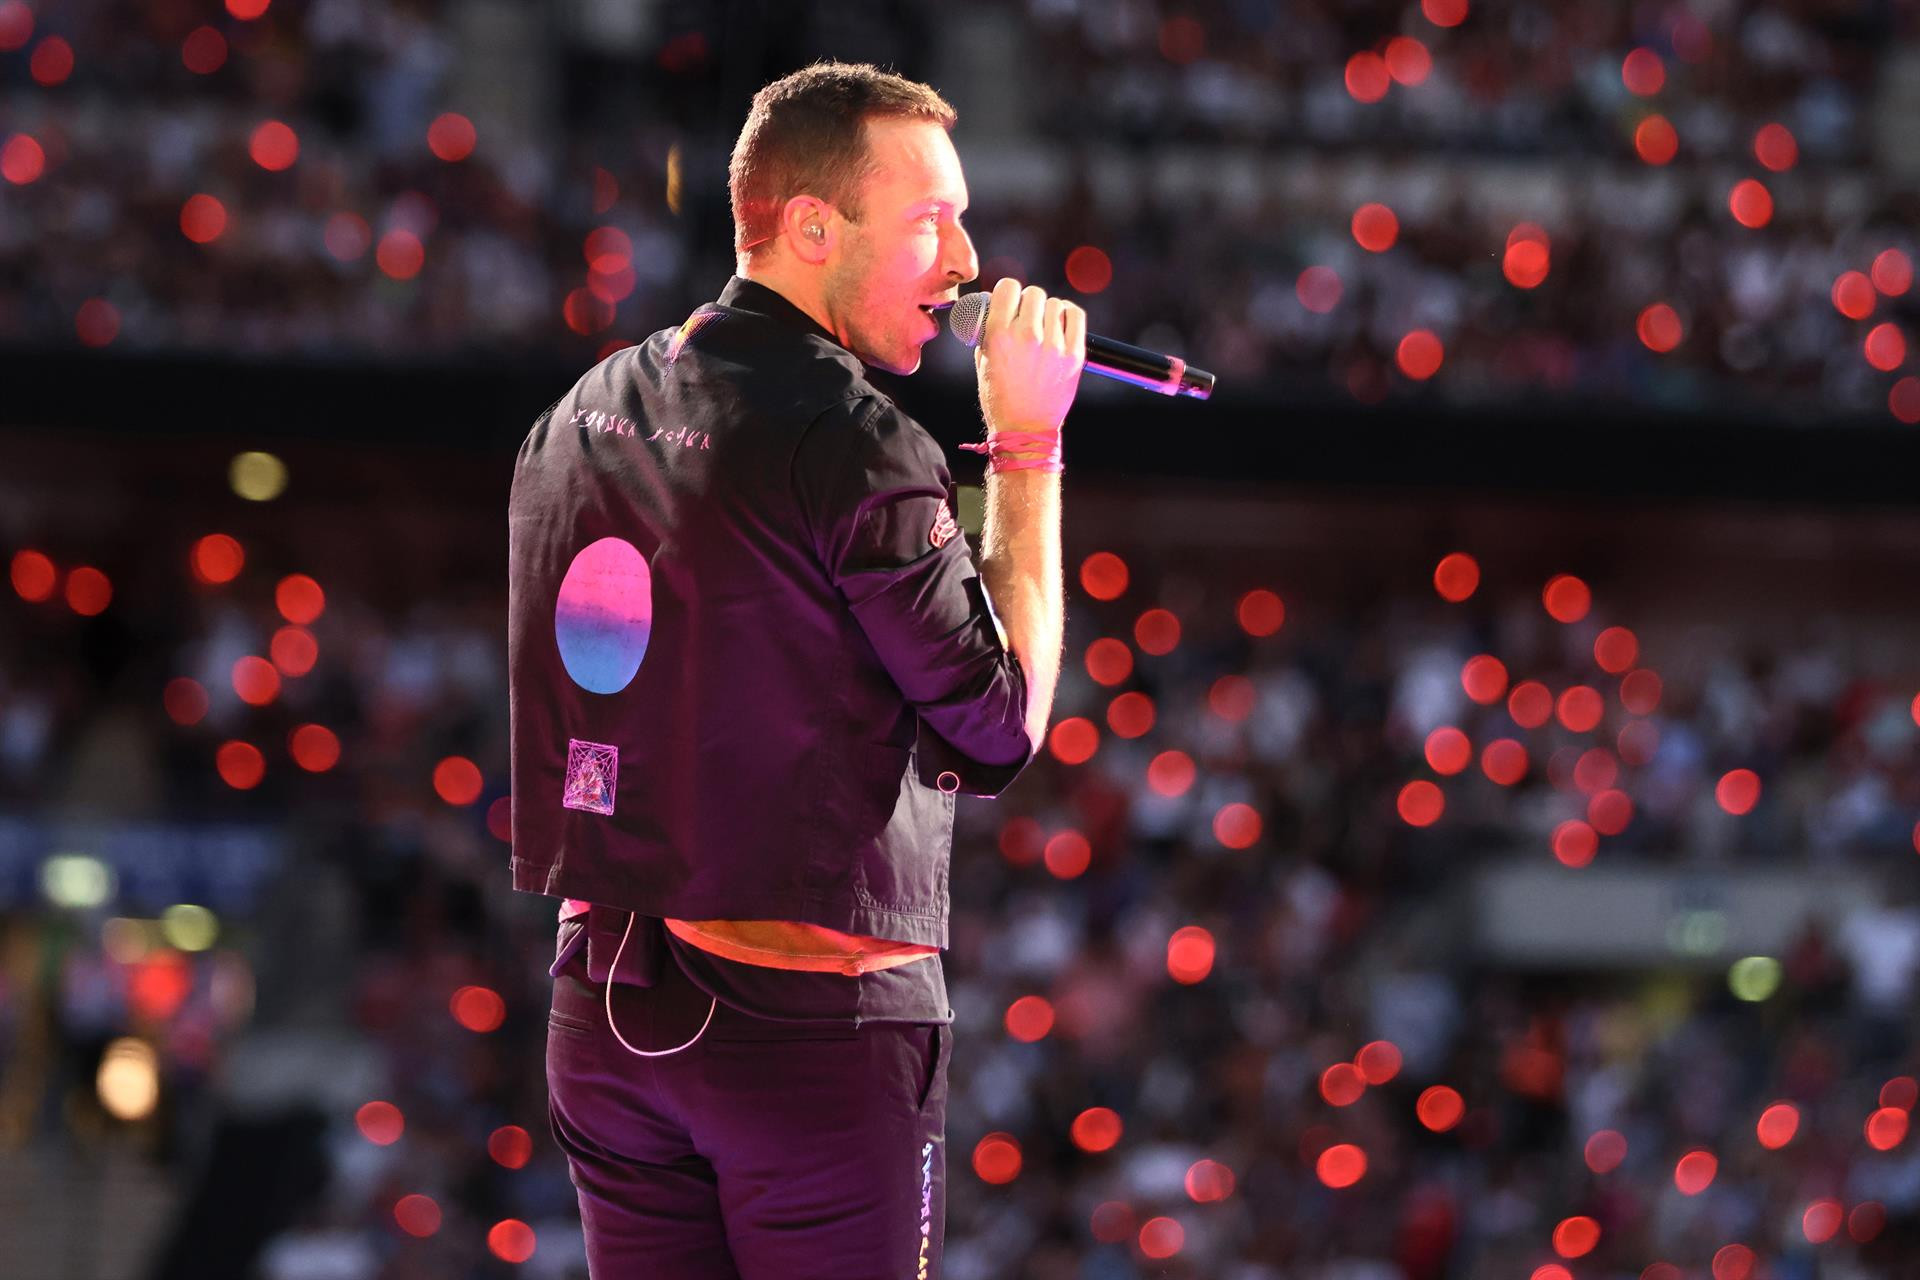 Chris Martin, vocalista de Coldplay, durante un concierto en Londres / Suzan Moore/PA Wire/dpa